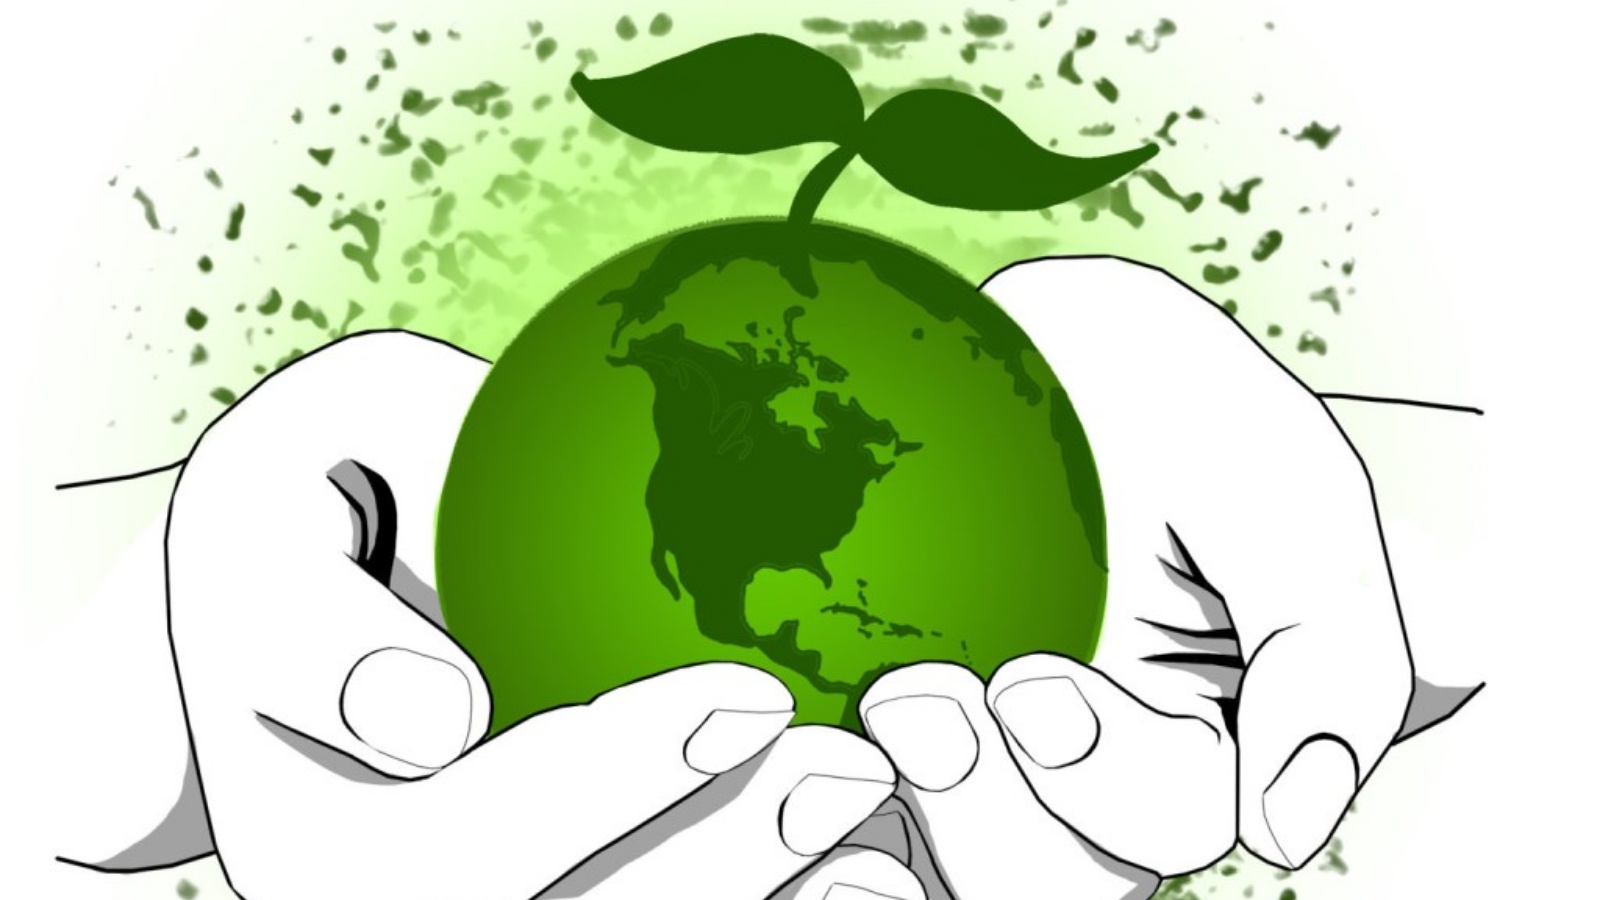 Как спасти мир 8. Рисунок на экологическую тематику. Экология картинки. Экология земли. Плакат защита окружающей среды.